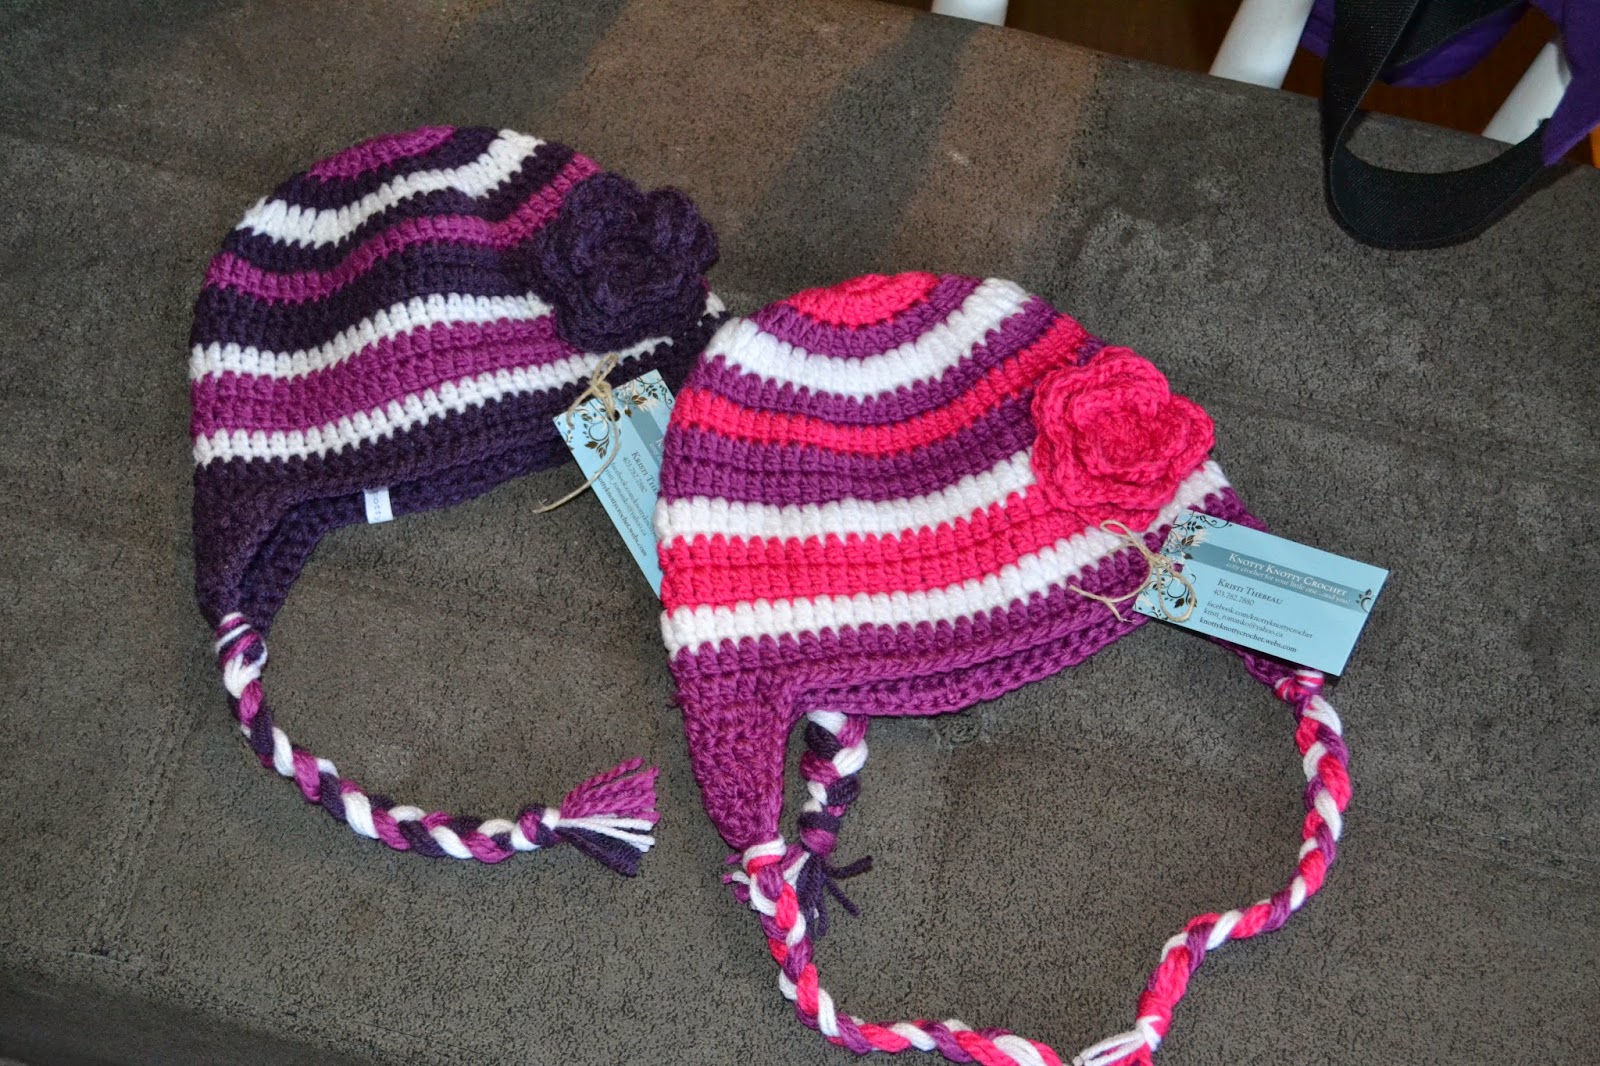 Knotty Knotty Crochet: super bulky striped hat FREE PATTERN!